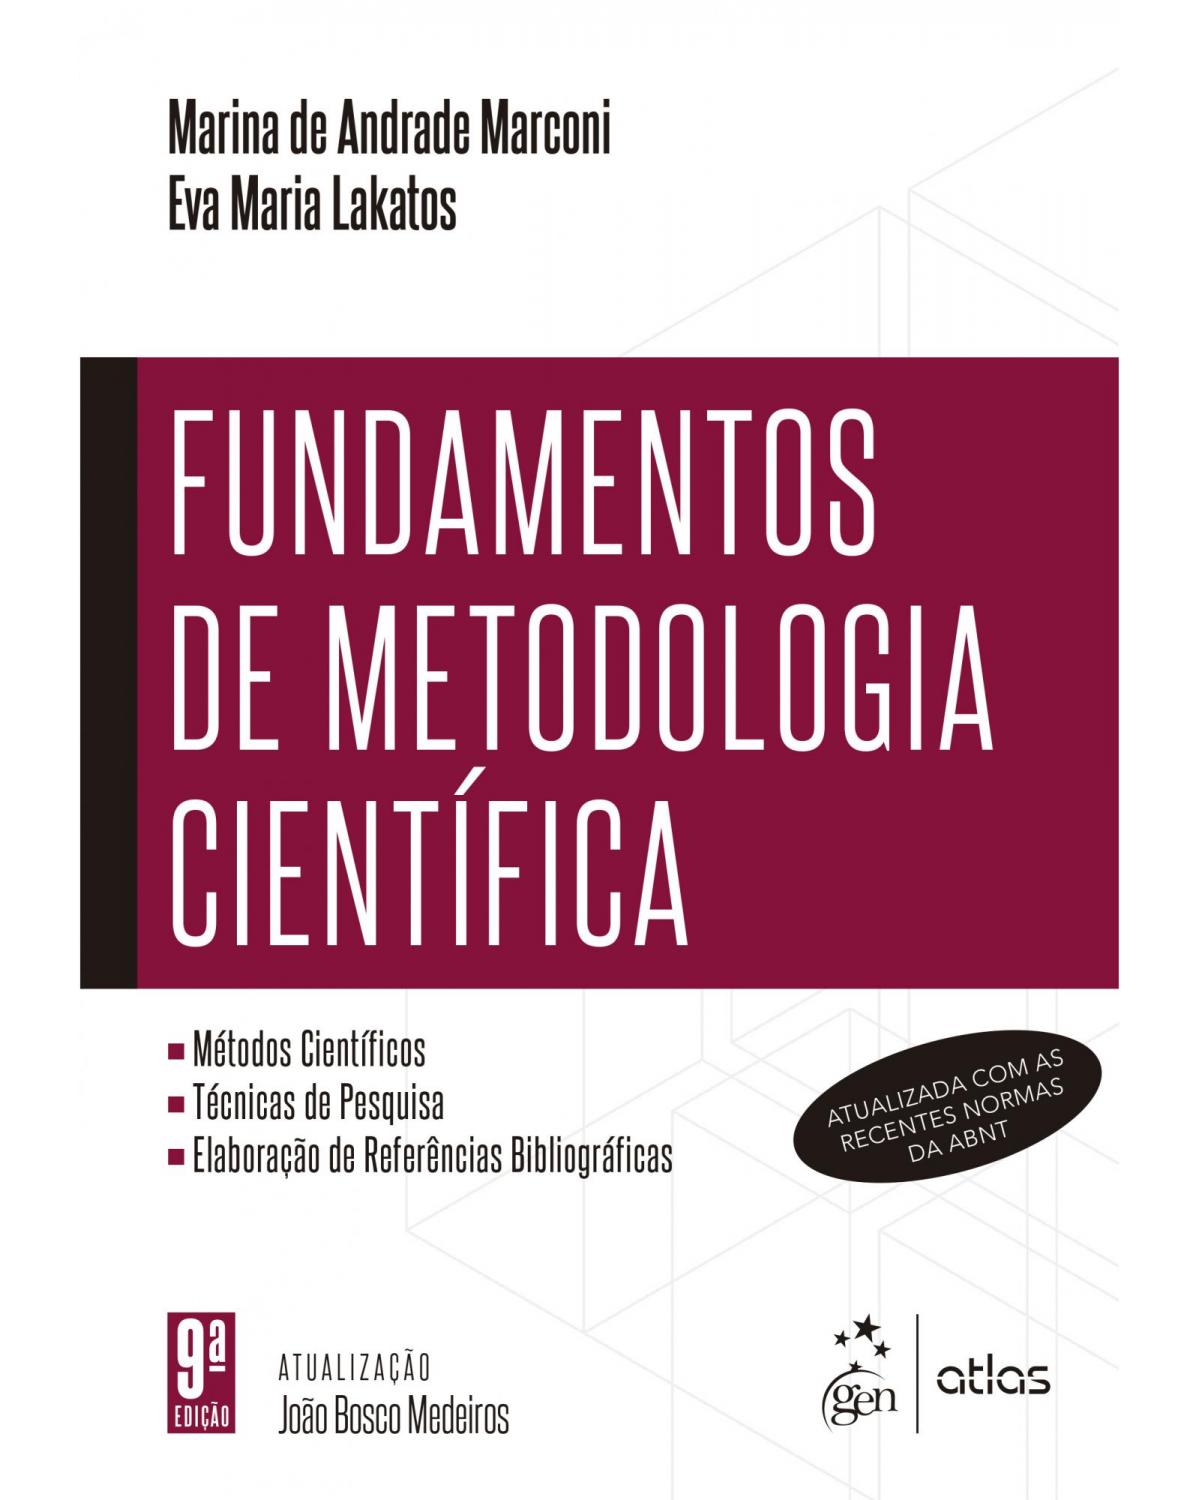 Fundamentos de metodologia científica - 9ª Edição | 2021